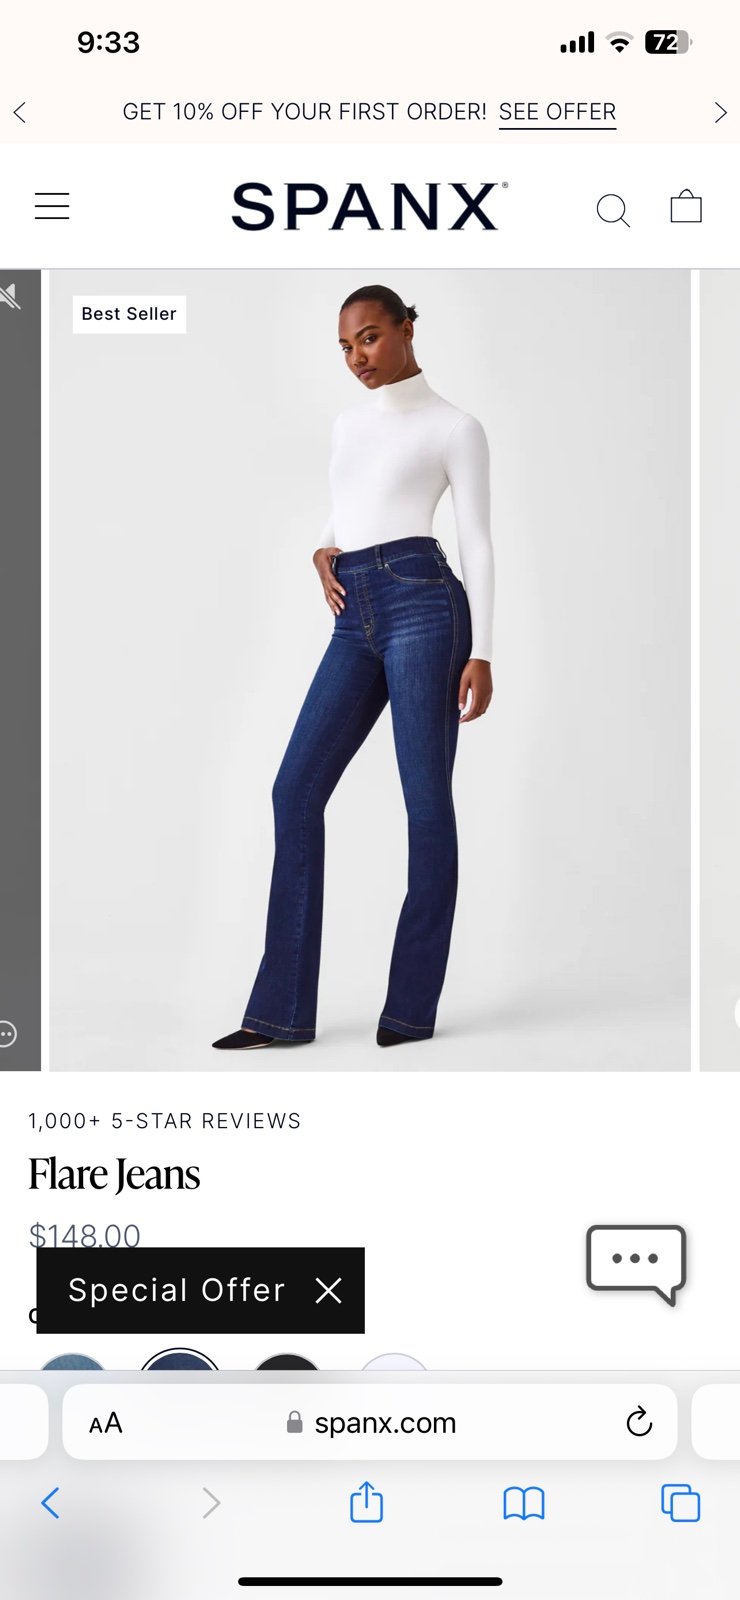 Custom SPANX jeans flare NzGrK5Xx0 well sale